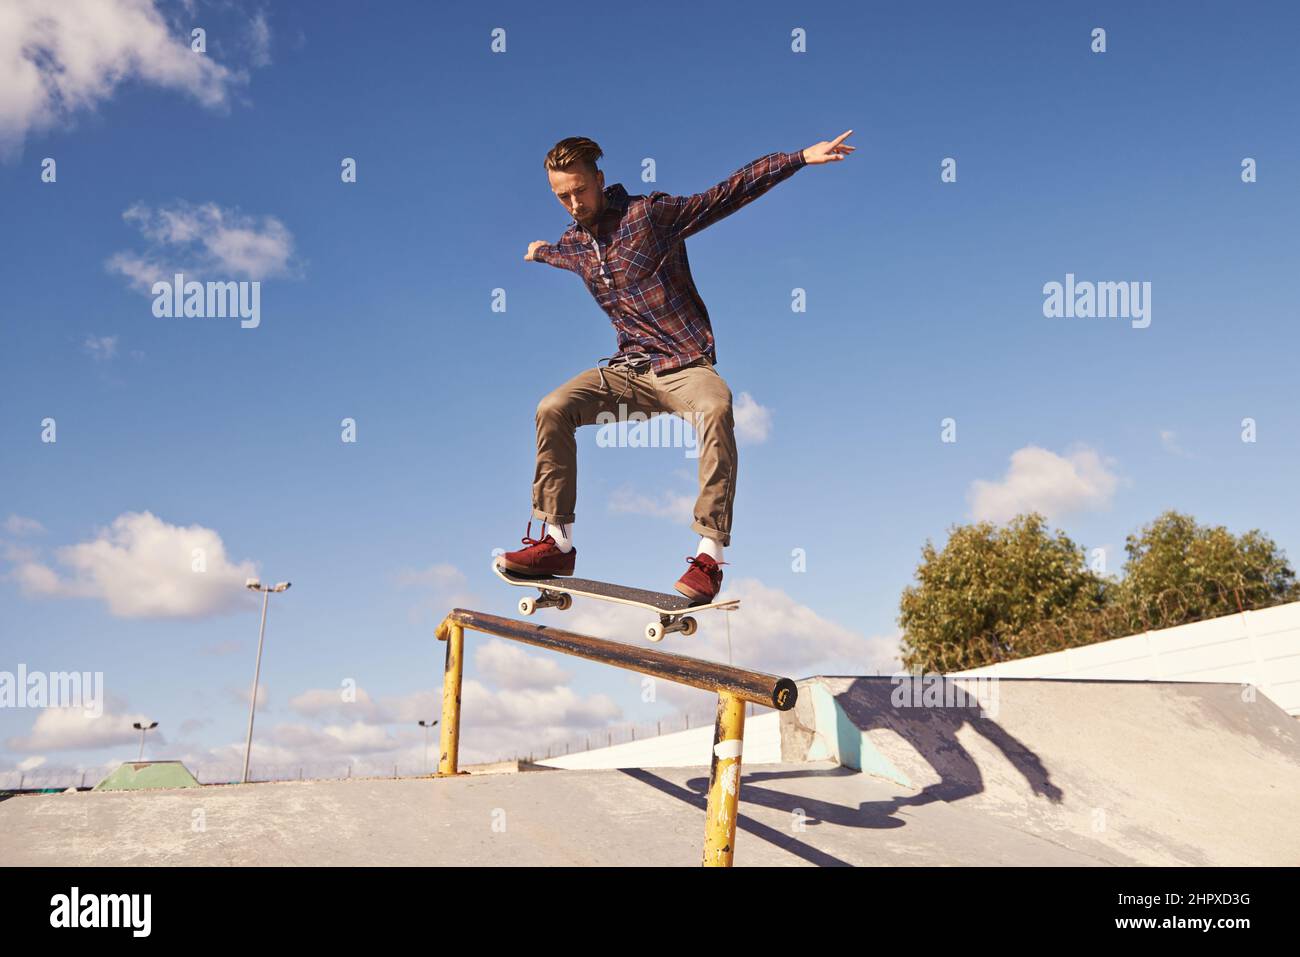 Comme le vol. Photo d'un skateboarder effectuant un tour sur un rail. Banque D'Images